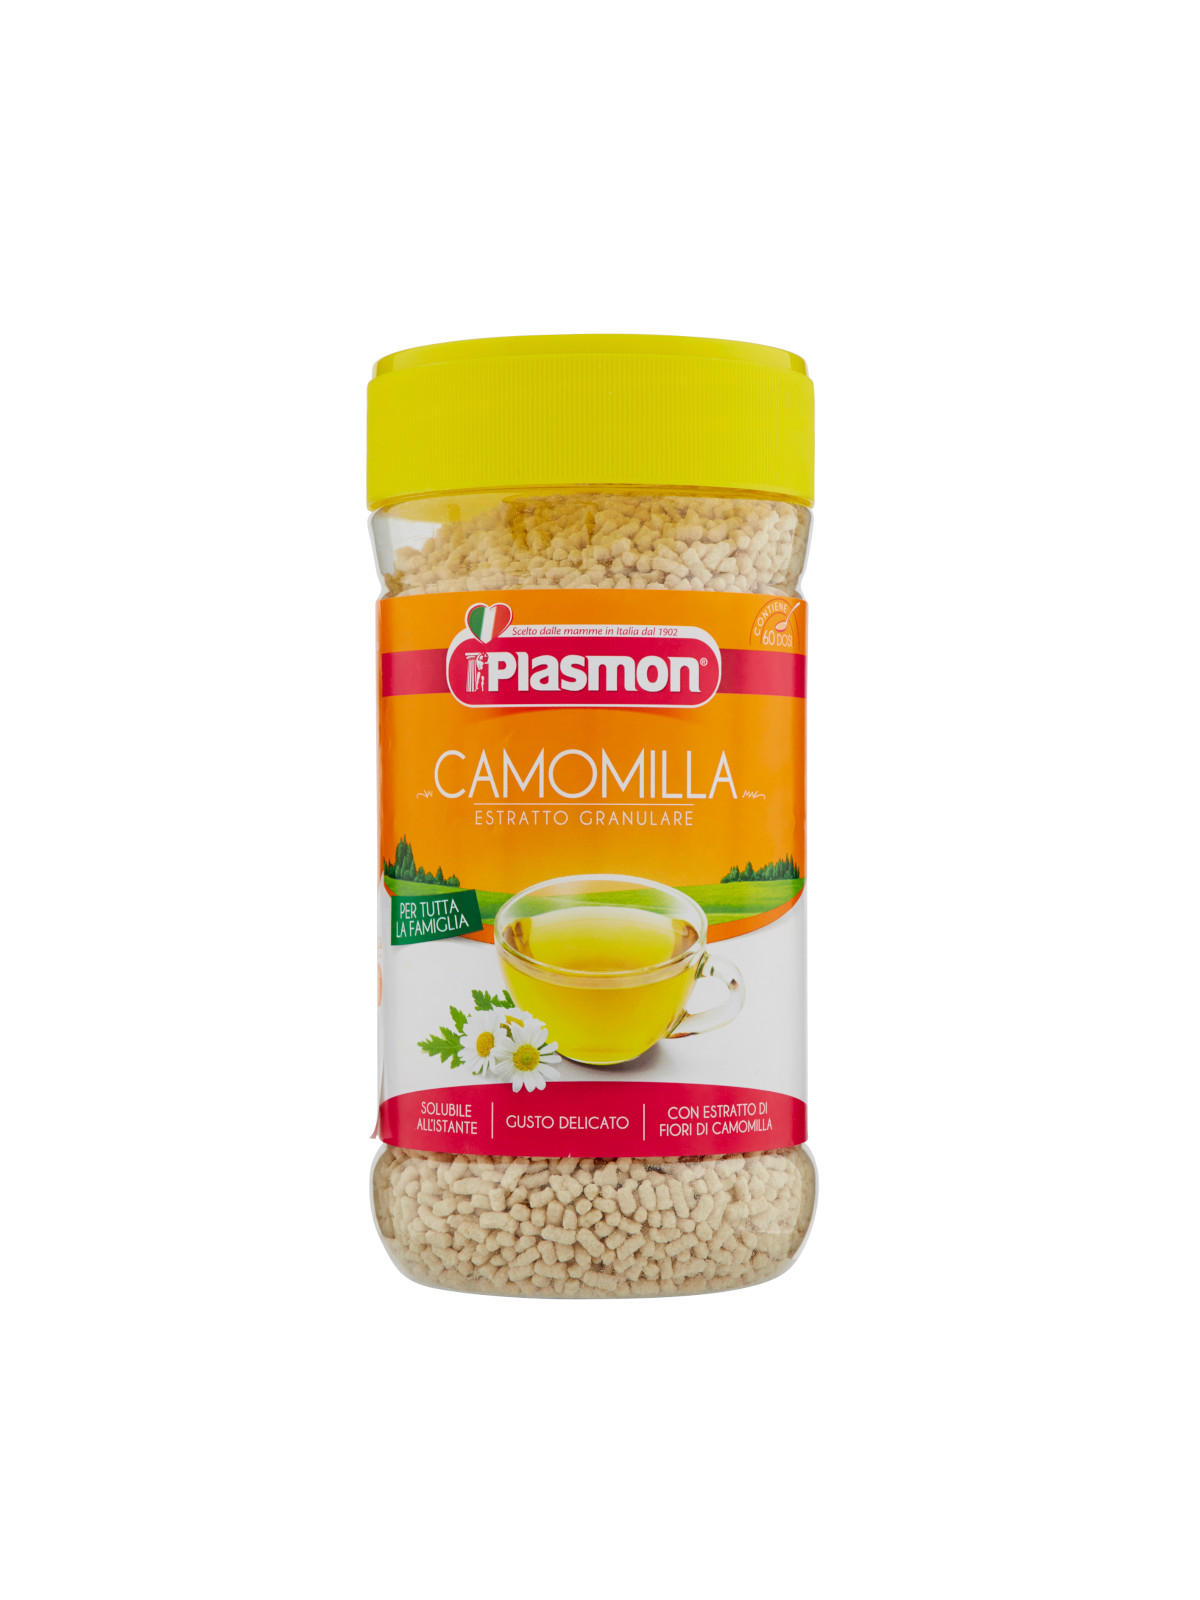 Plasmon - estratto granulare camomilla - barattolo - 360g